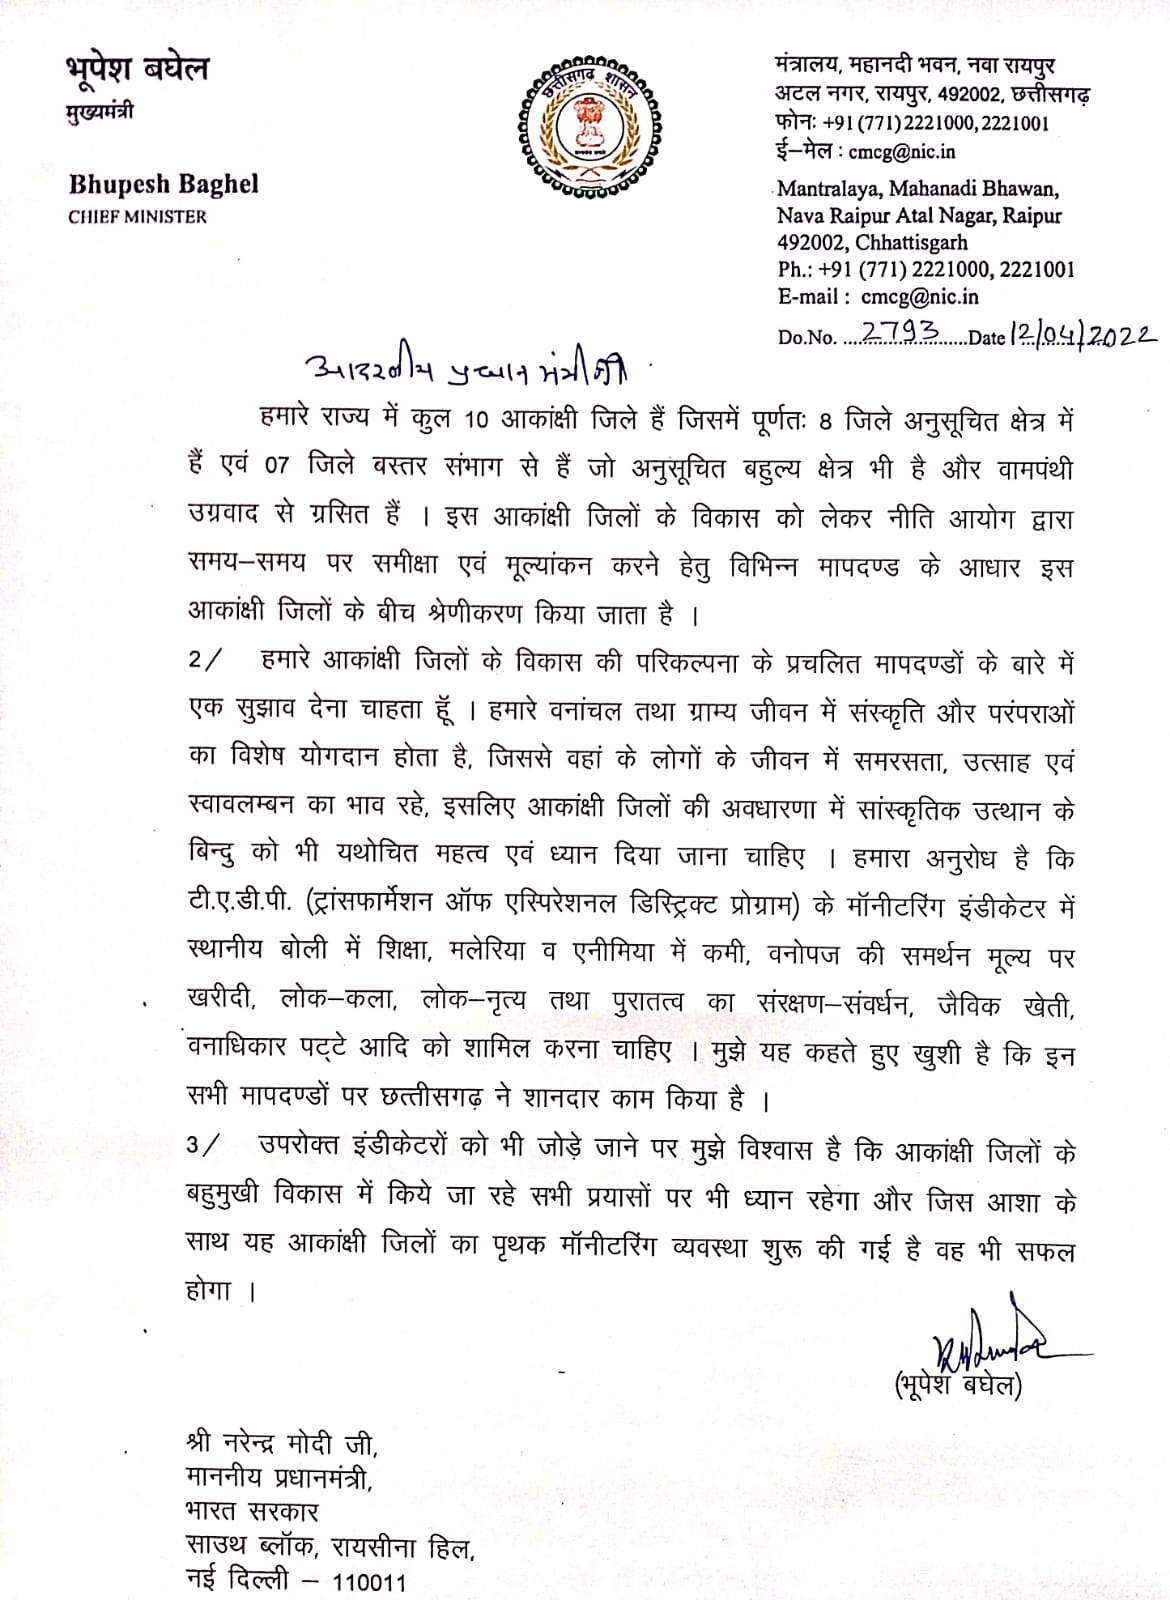 Chhattisgarh: सीएम भूपेश बघेल ने पीएम मोदी को लिखा पत्र, आकांक्षी जिलों की निगरानी के लिए नए इंडिकेटर जोड़ने की मांग